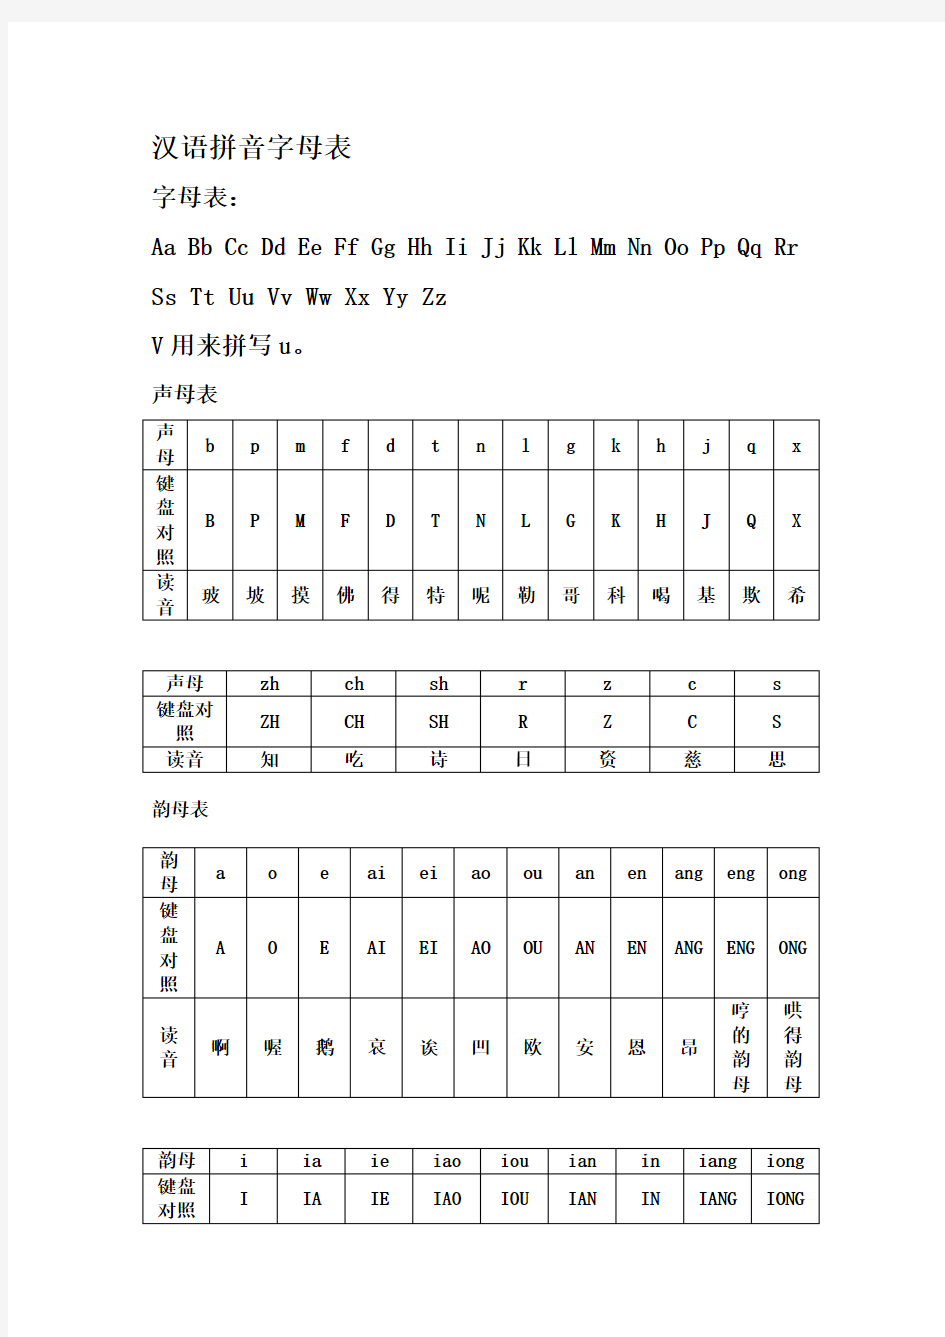 汉语拼音字母表与键盘对照学习打字法